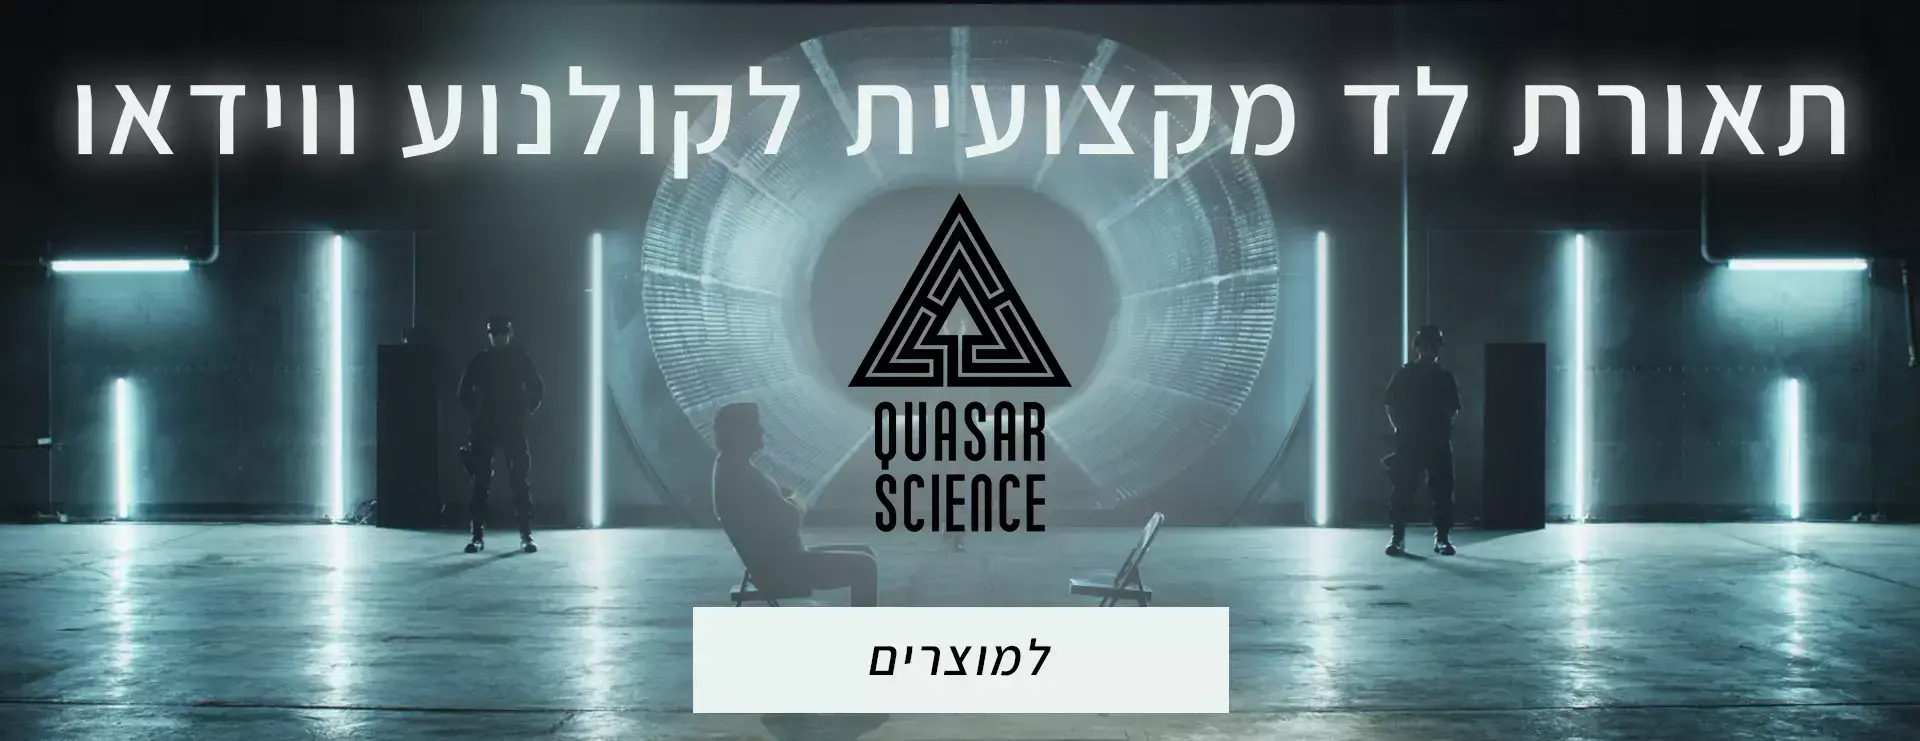 Quasar Science‏ 4